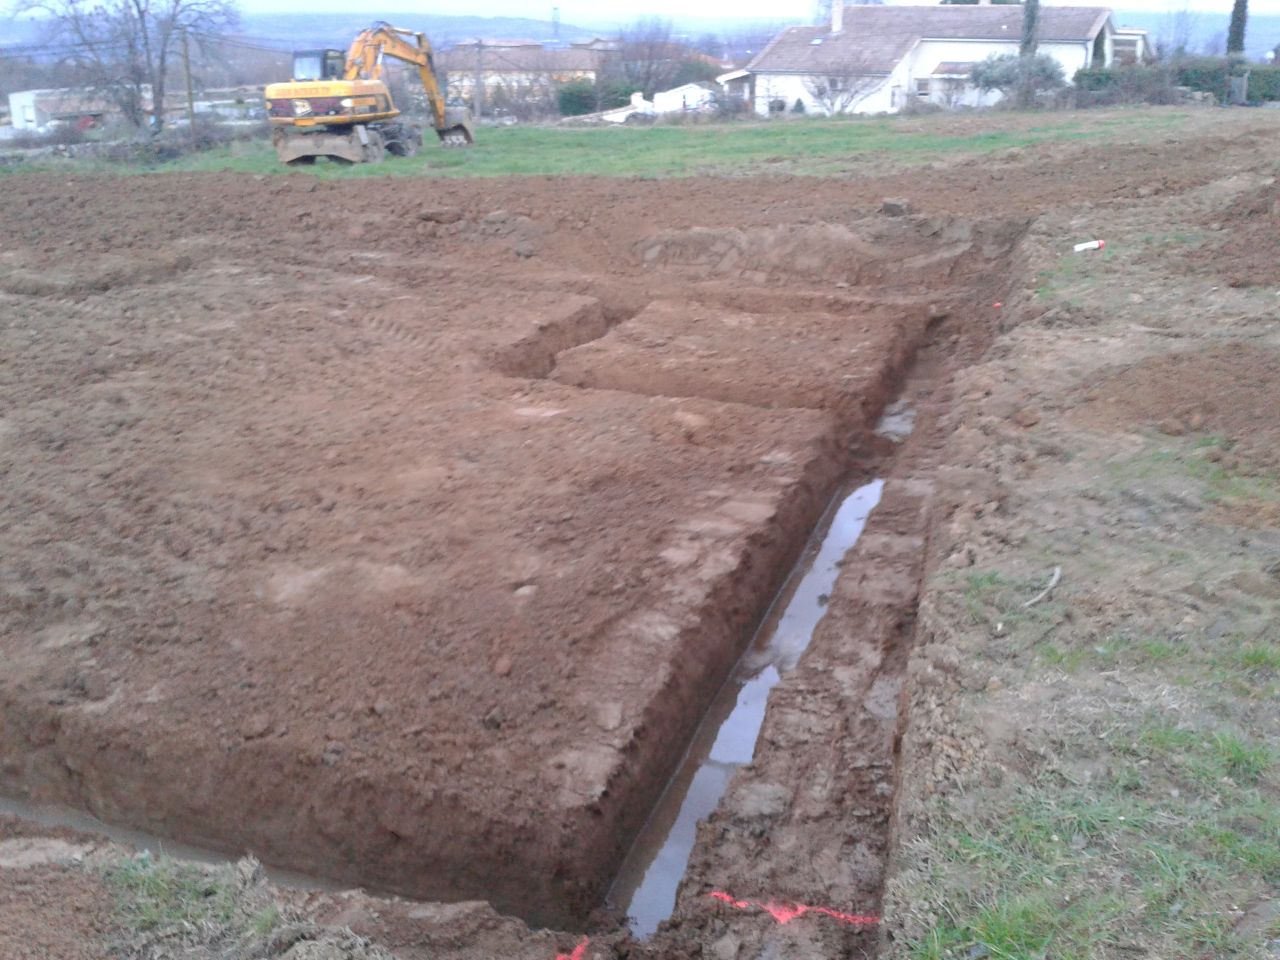 L'ouverture du chantier a commencé le 23-1-2014.
<br />
Nous avons pouvons enfin nous rendre compte de la taille de notre maison et de son emplacement sur le terrain